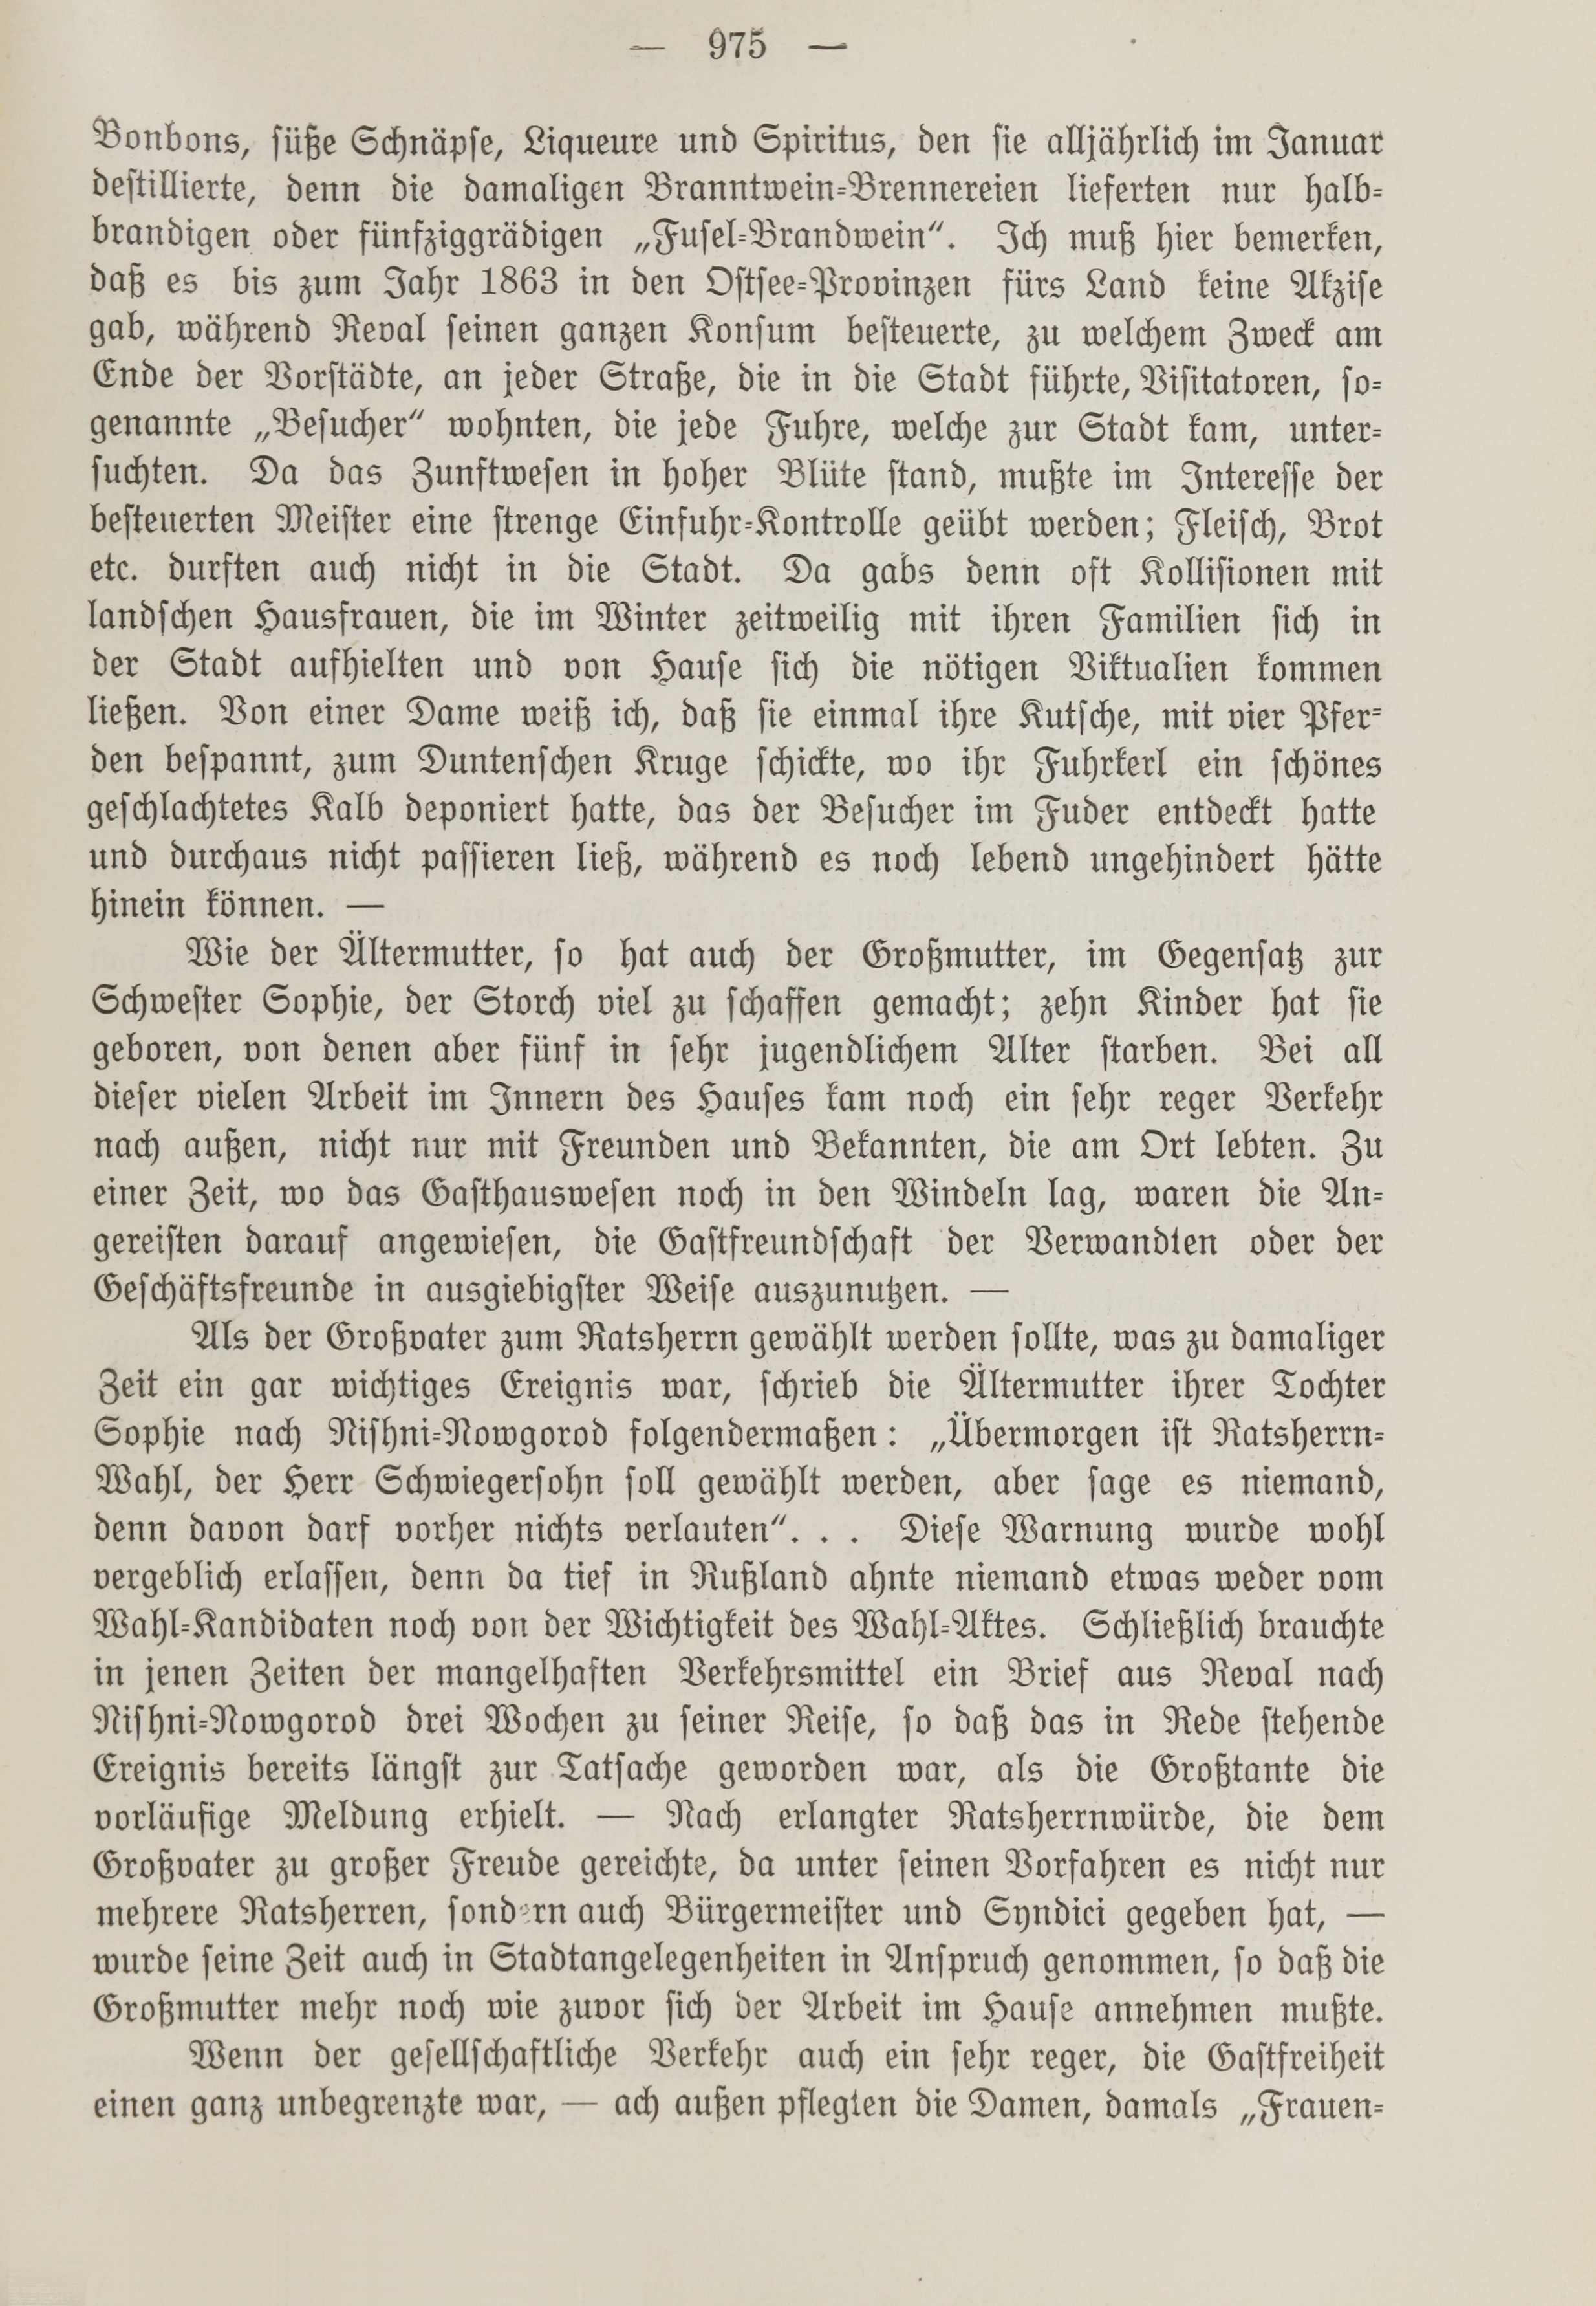 Deutsche Monatsschrift für Russland [1] (1912) | 983. (975) Main body of text